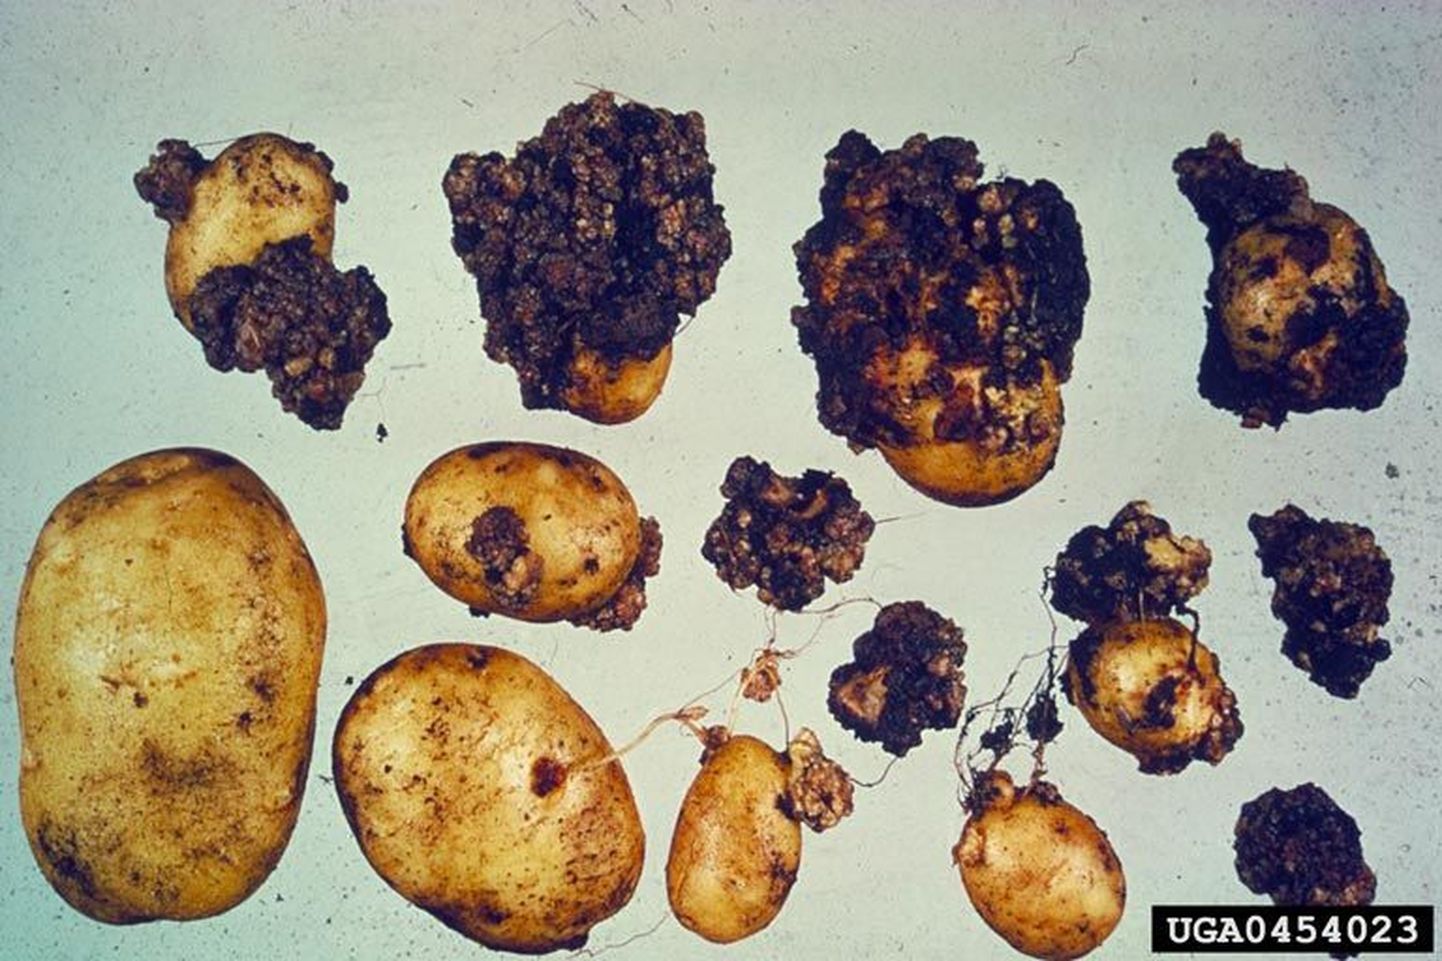 Клубни картофеля, пораженные грибом Synchytrium endobioticum.